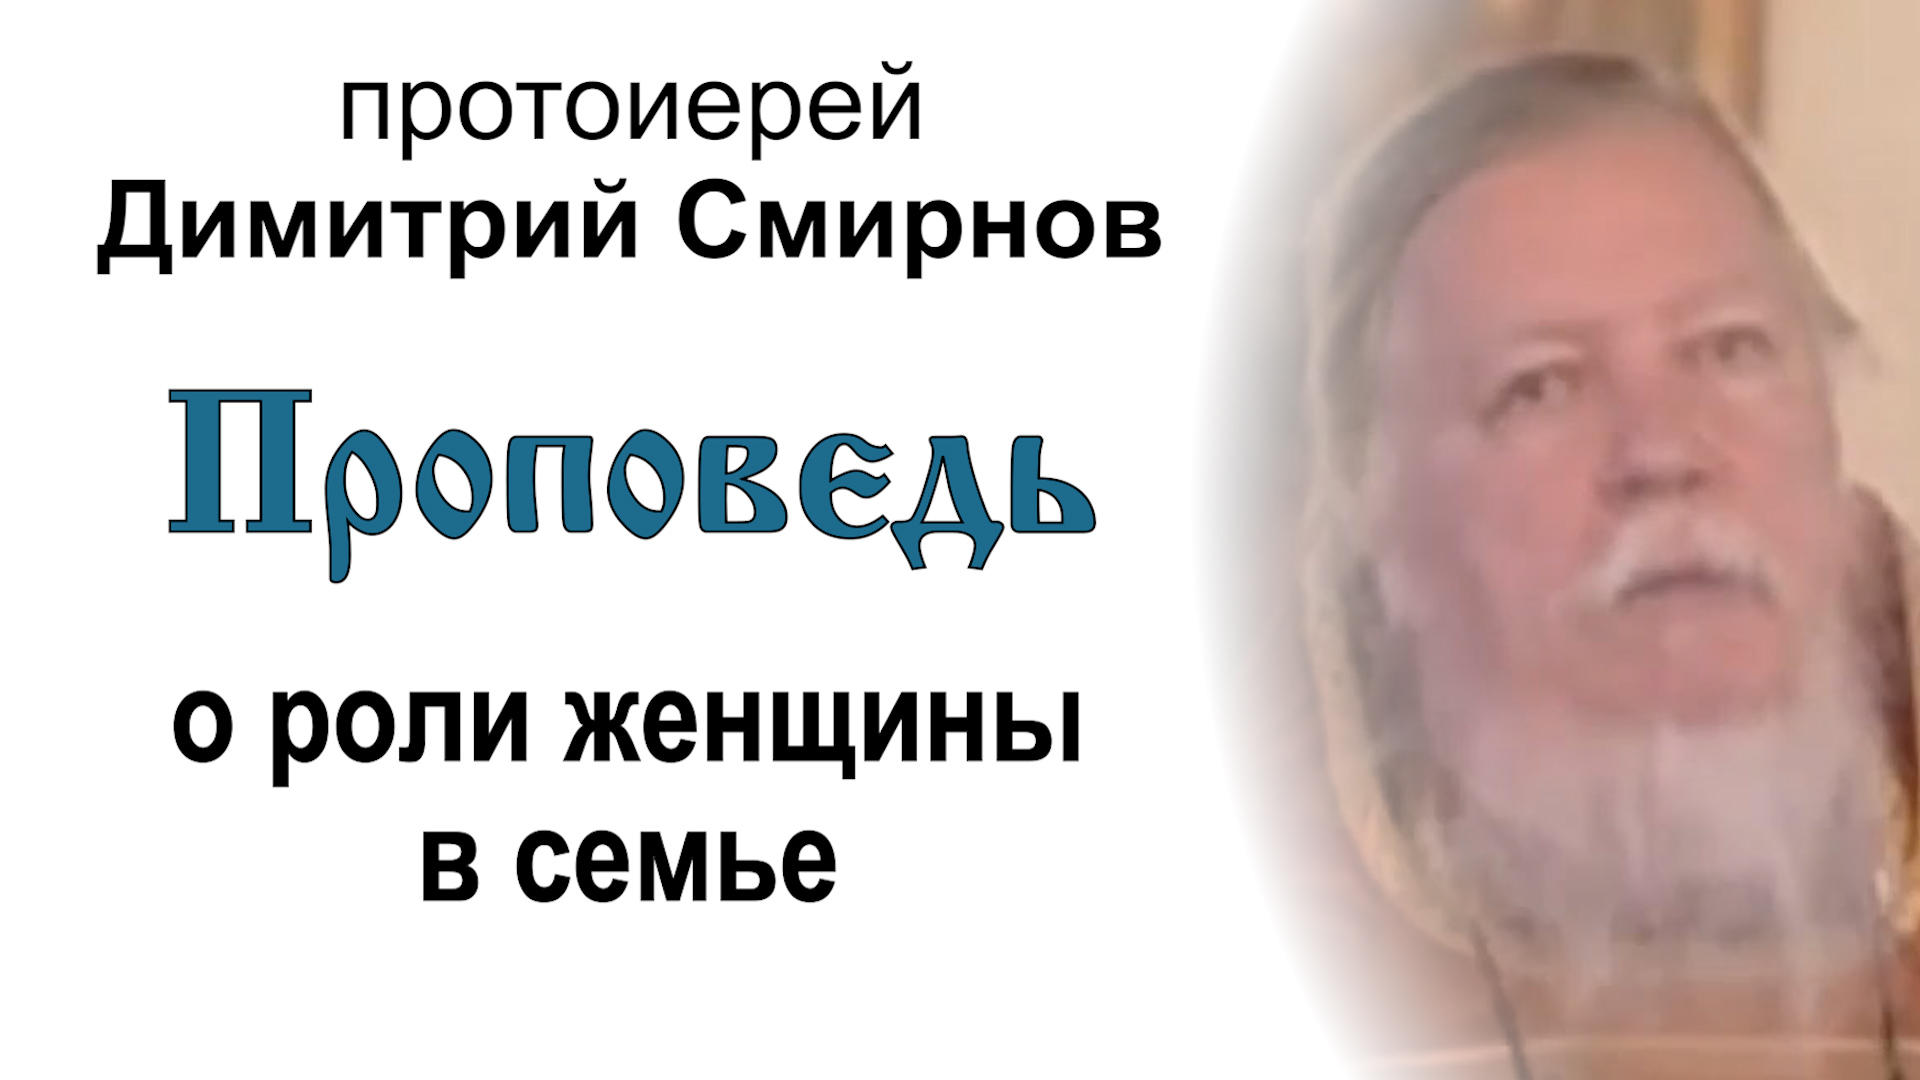 Проповедь о роли женщины в семье (2005.05.15). Протоиерей Димитрий Смирнов